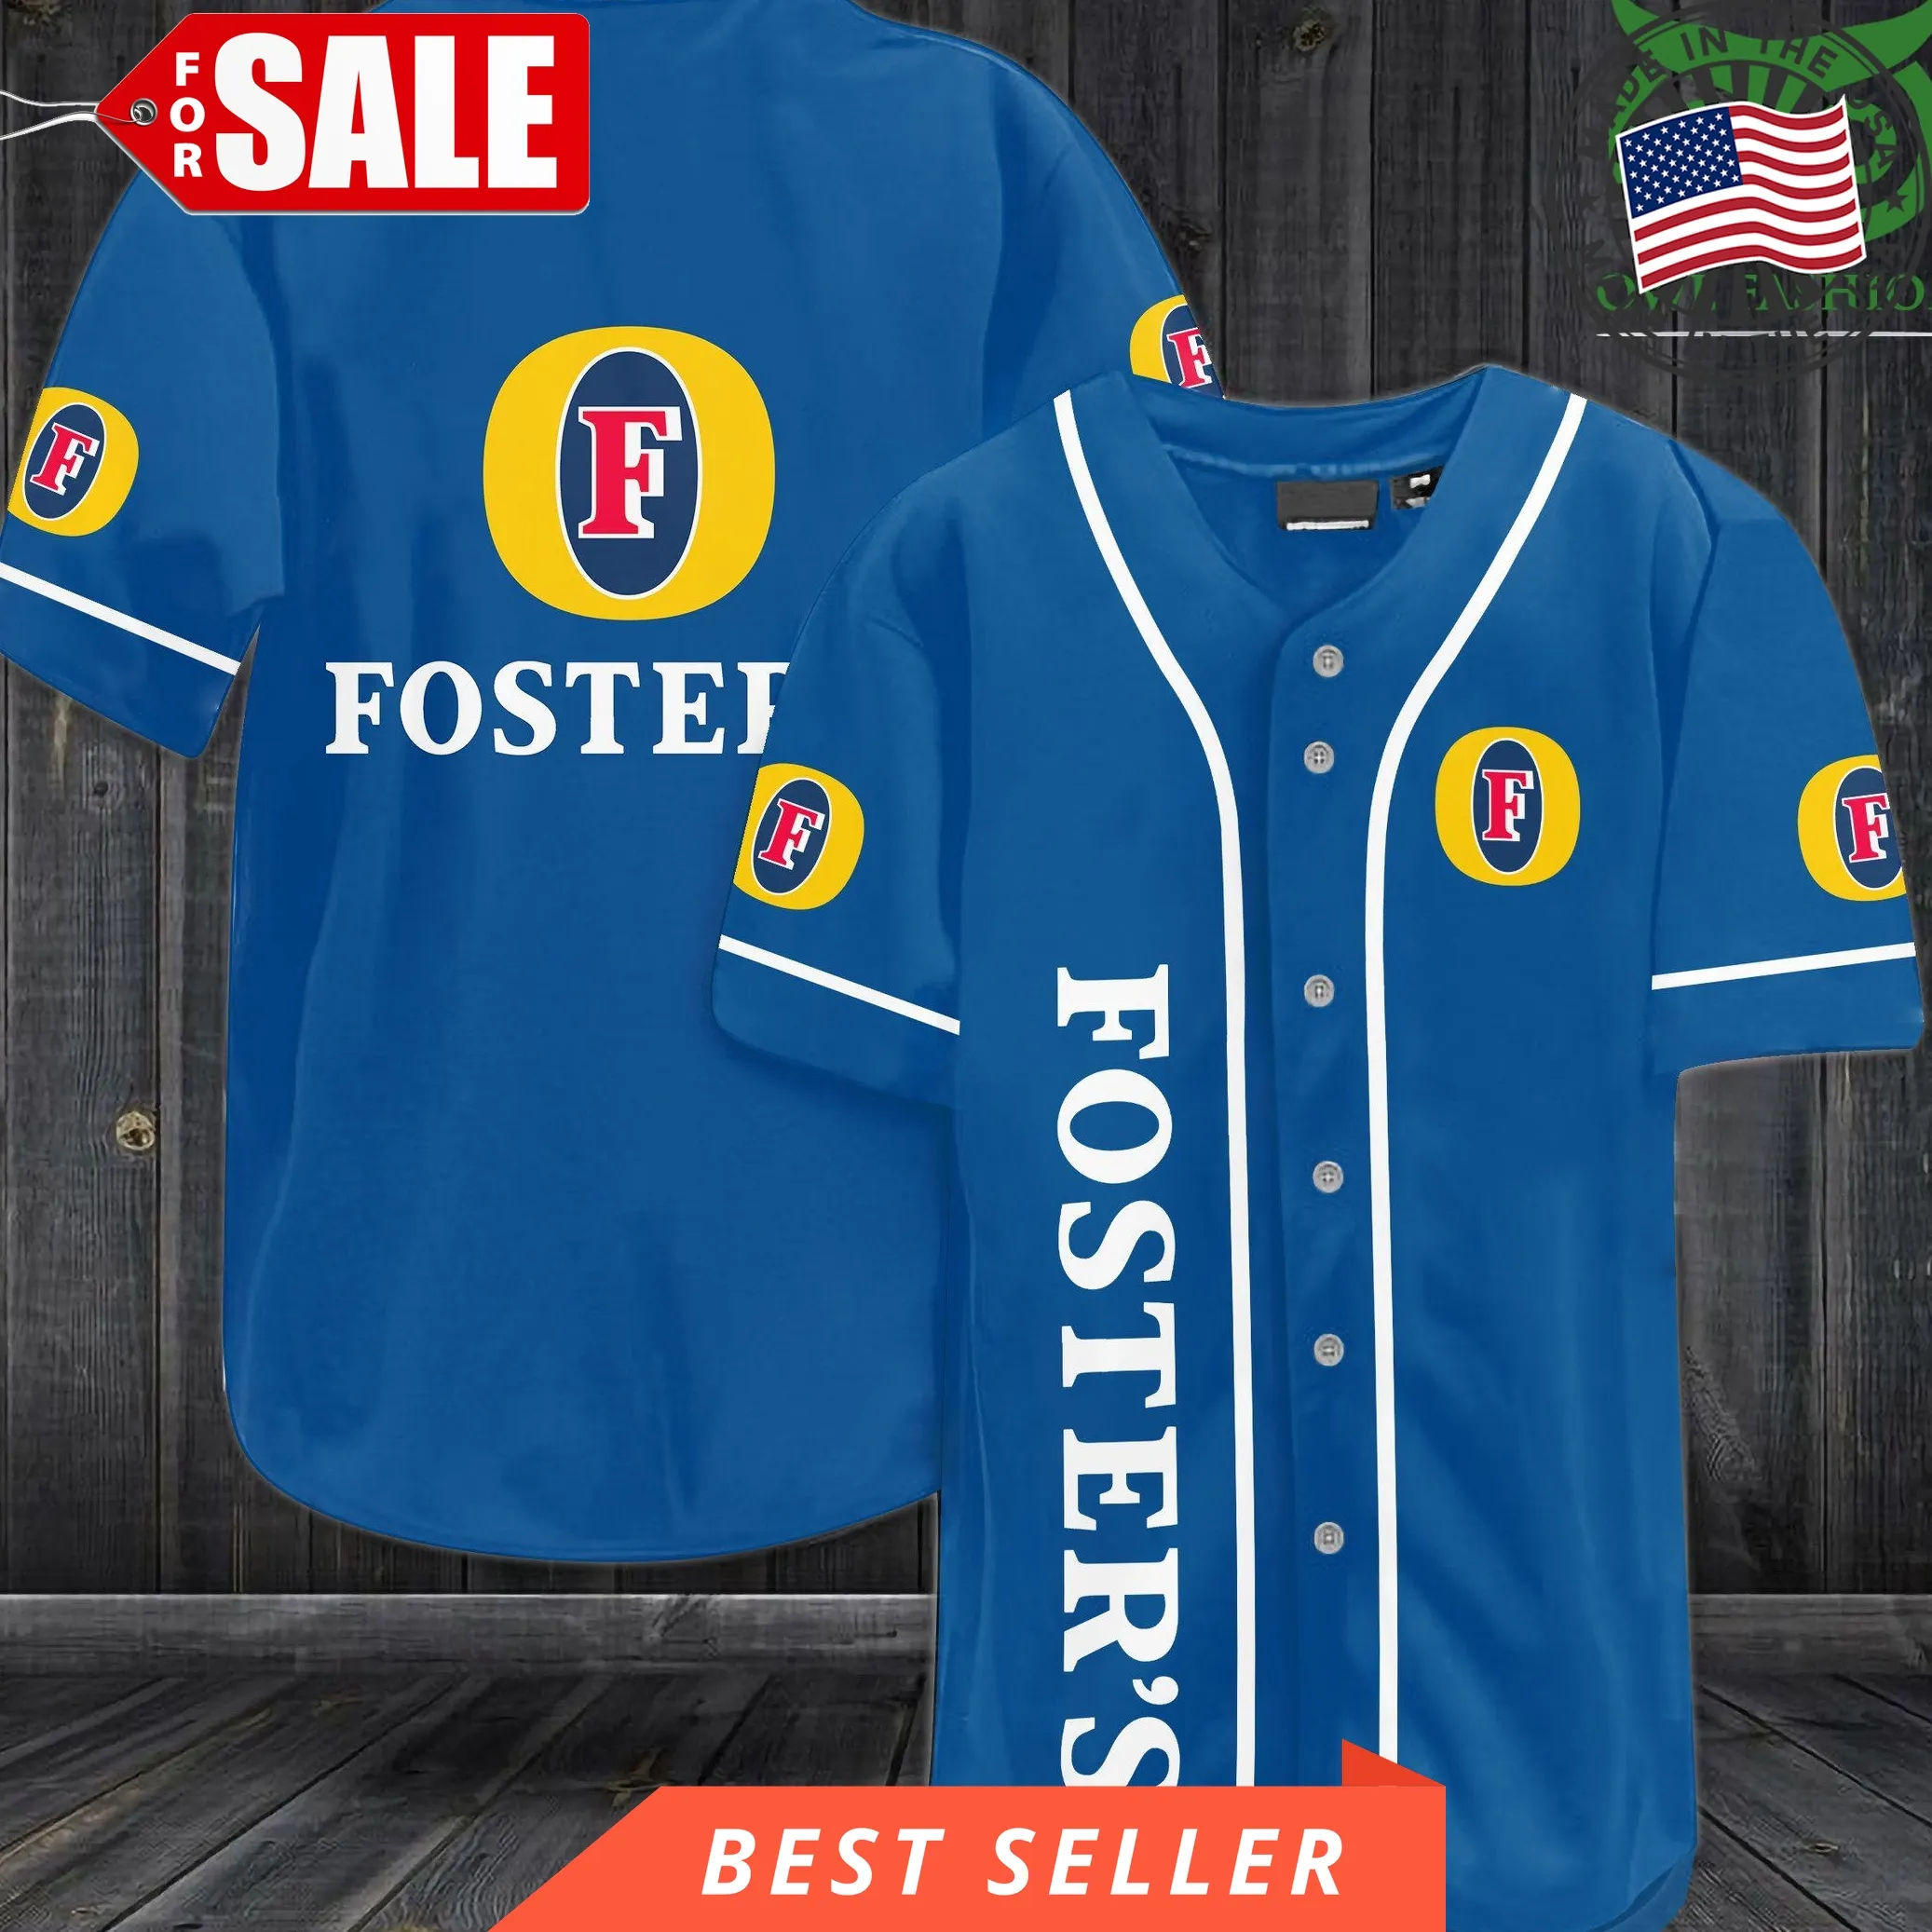 Fosters Blue Baseball Jersey Shirt